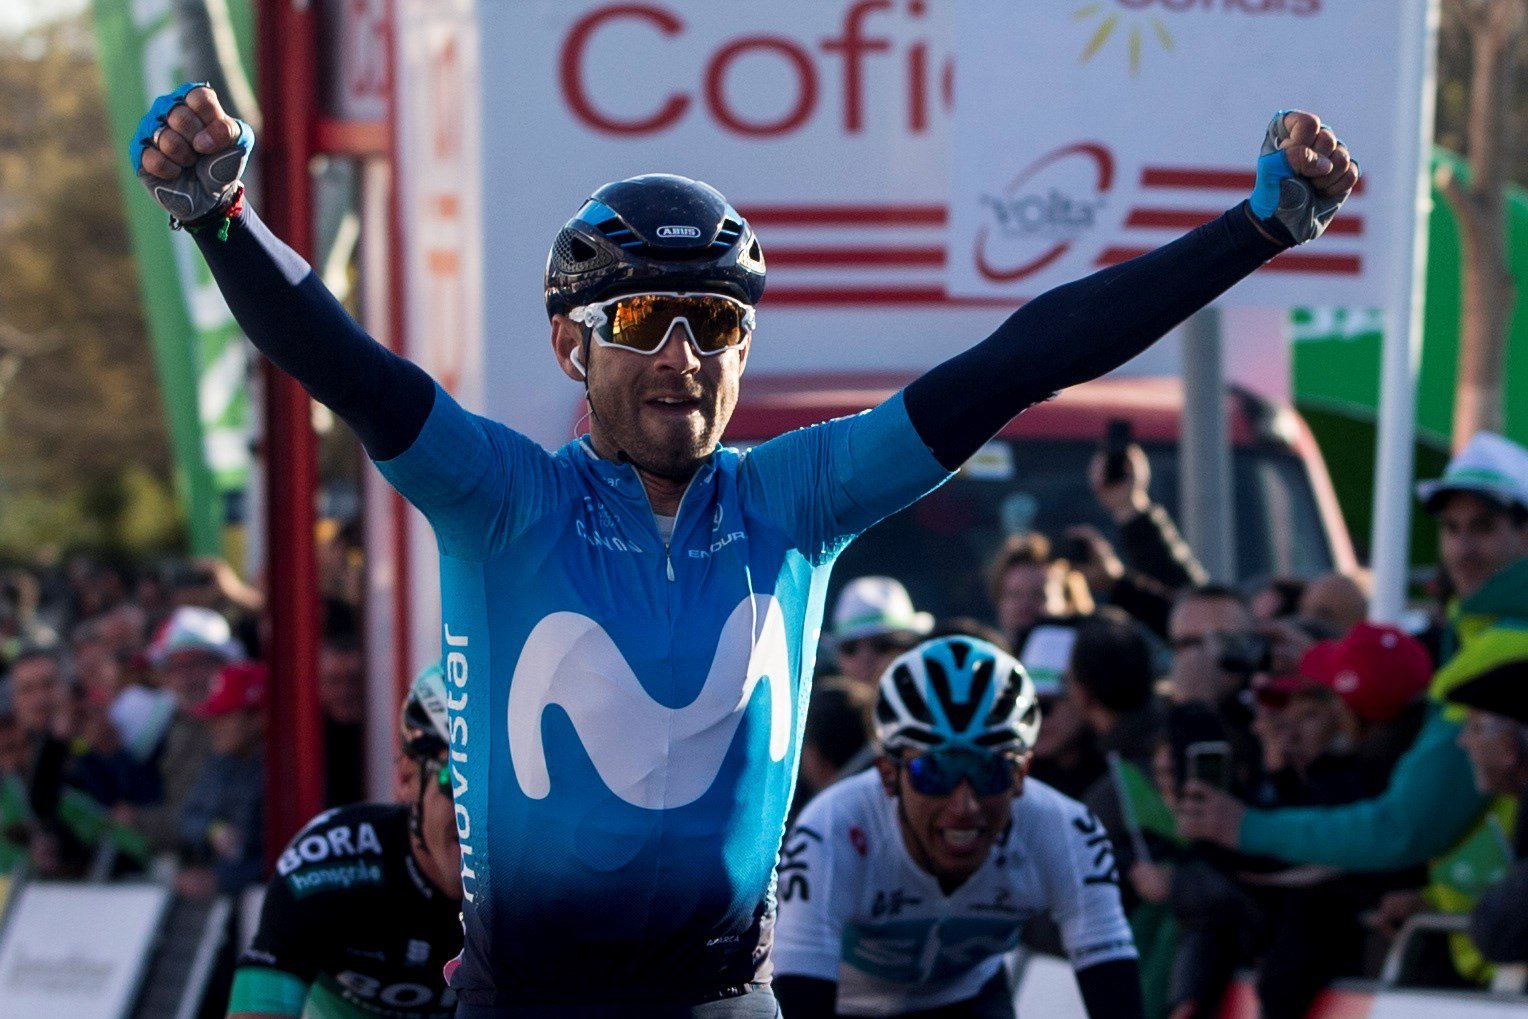 Valverde agafa el liderat de la Volta abans de la muntanya